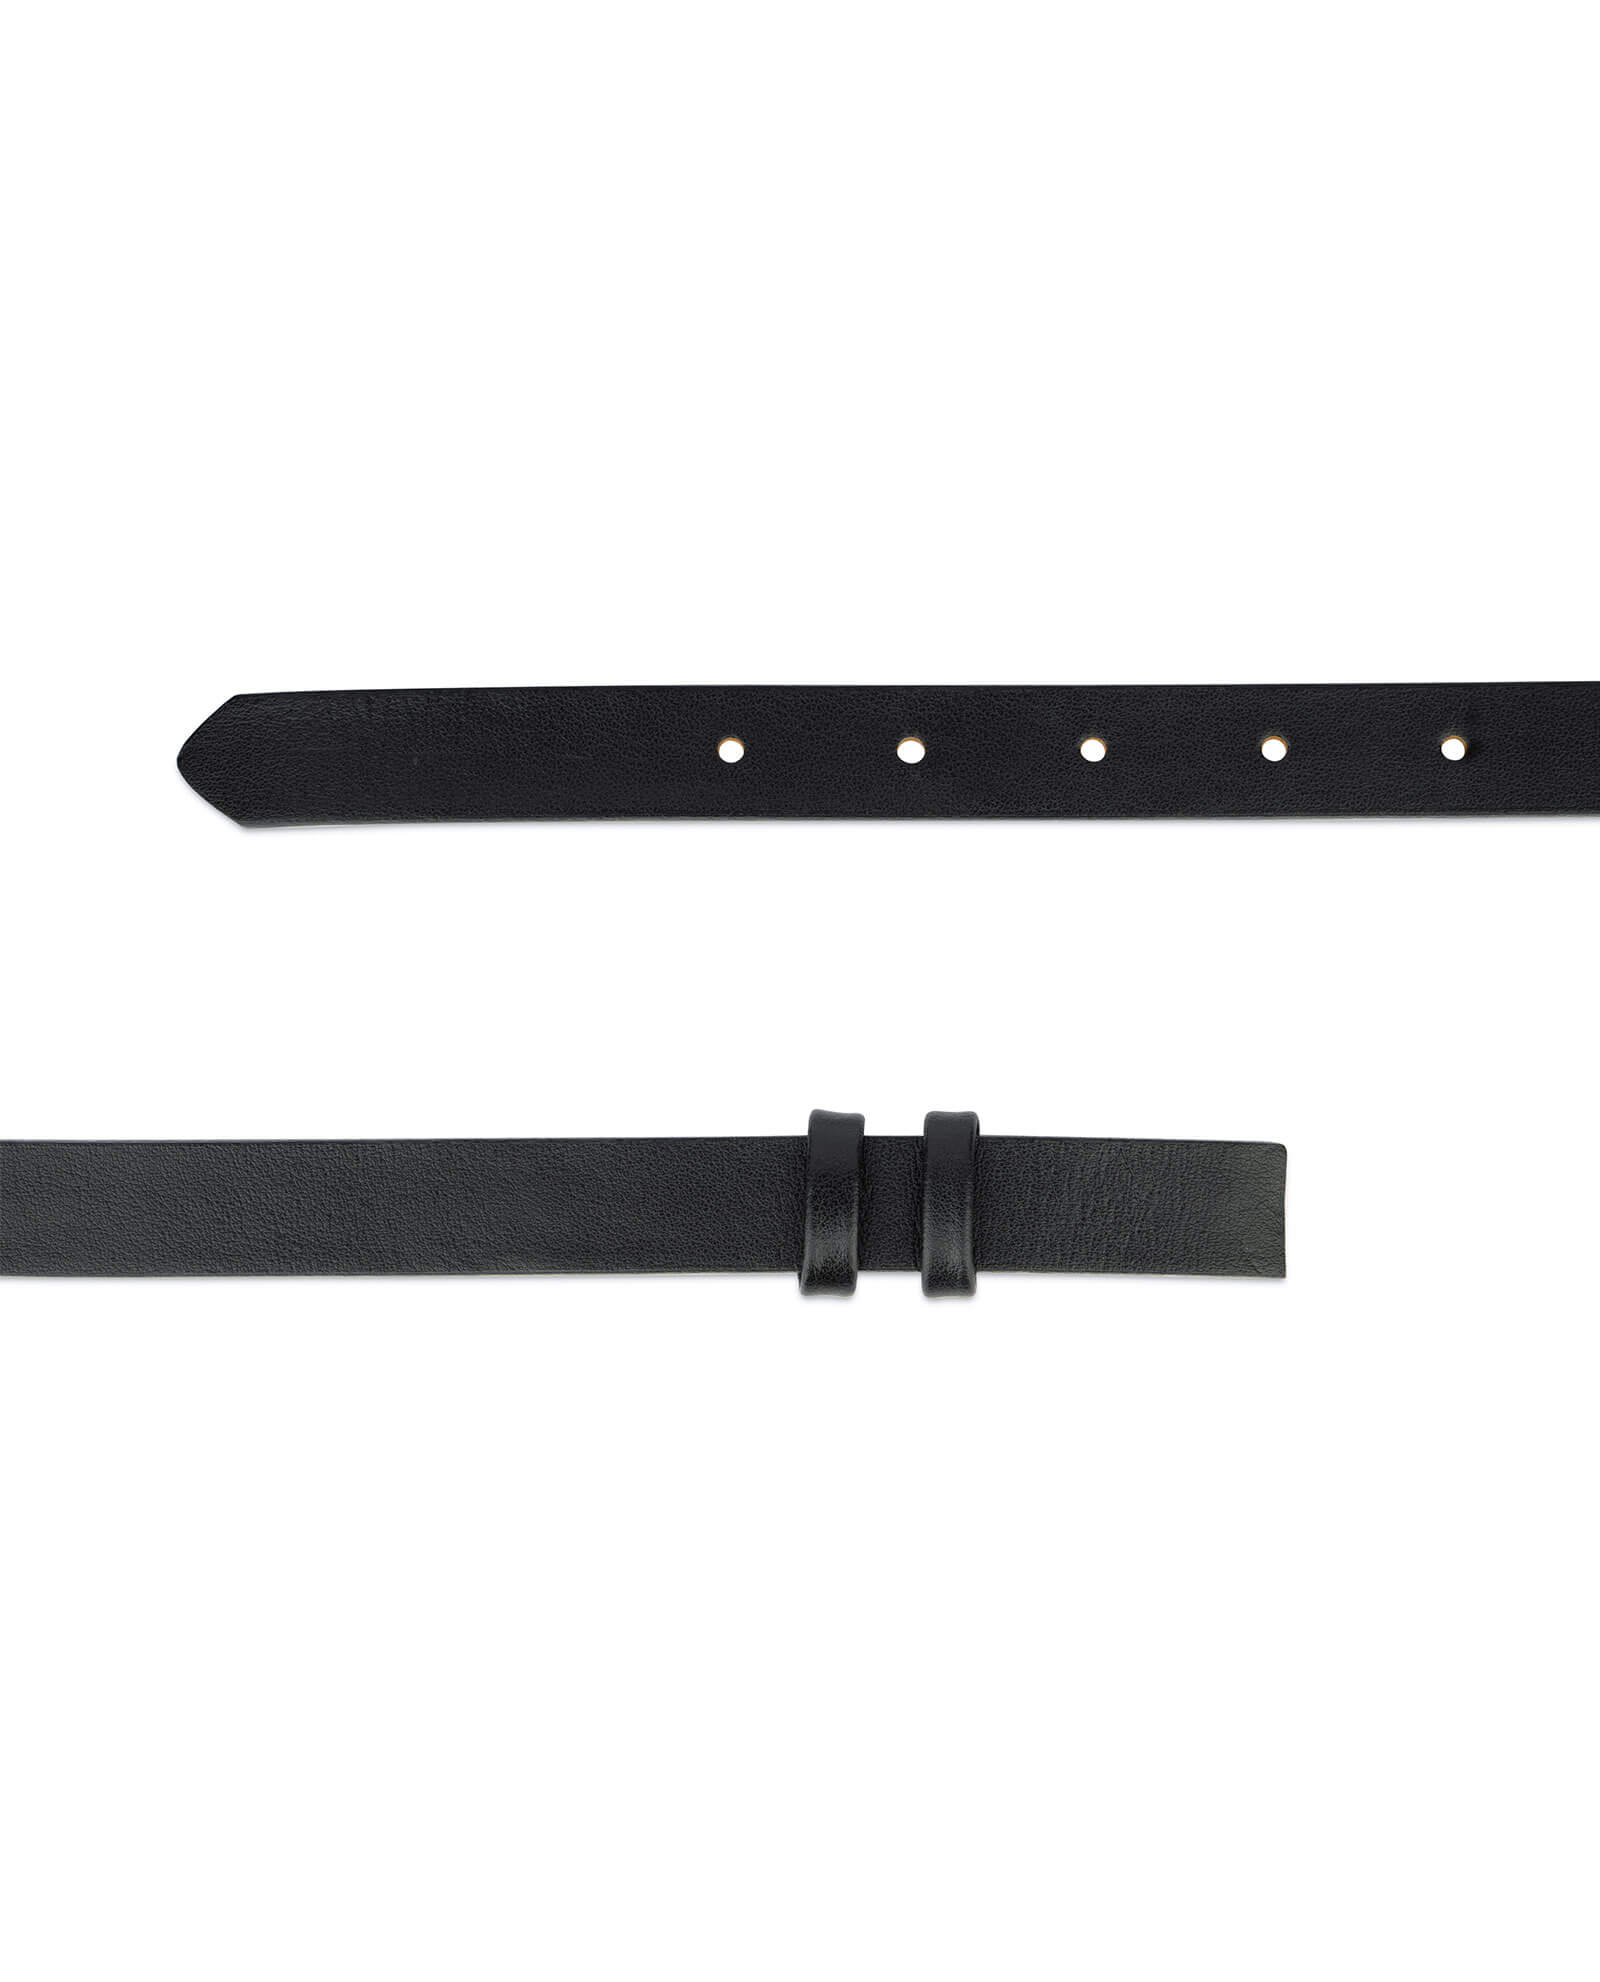 Buy Black Belt Leather Strap 20 Mm | LeatherBeltsOnline.com